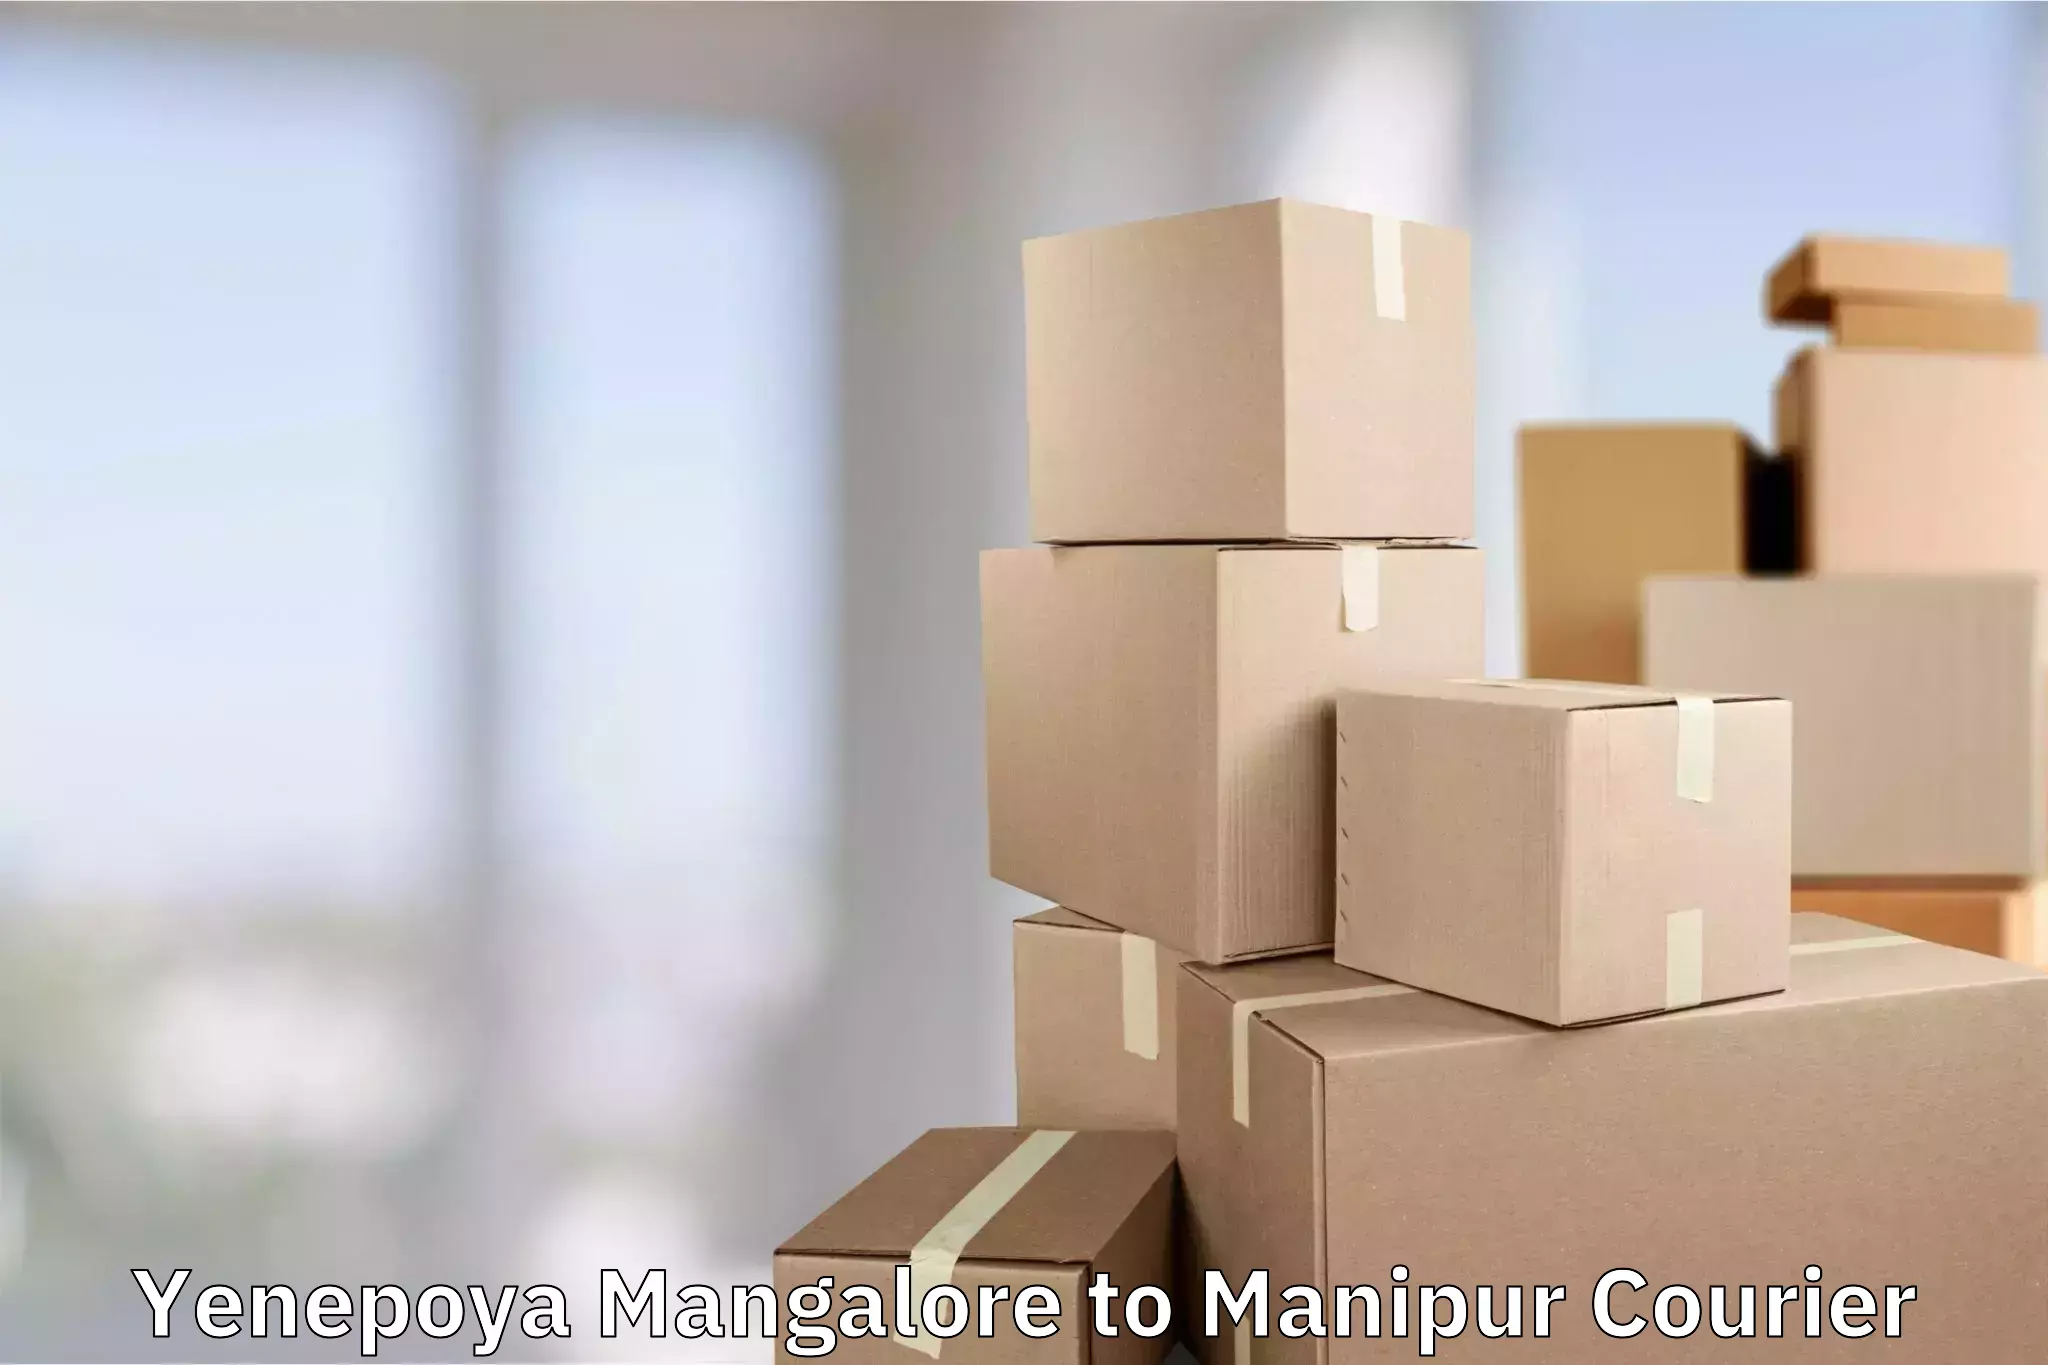 Luggage delivery network Yenepoya Mangalore to Manipur